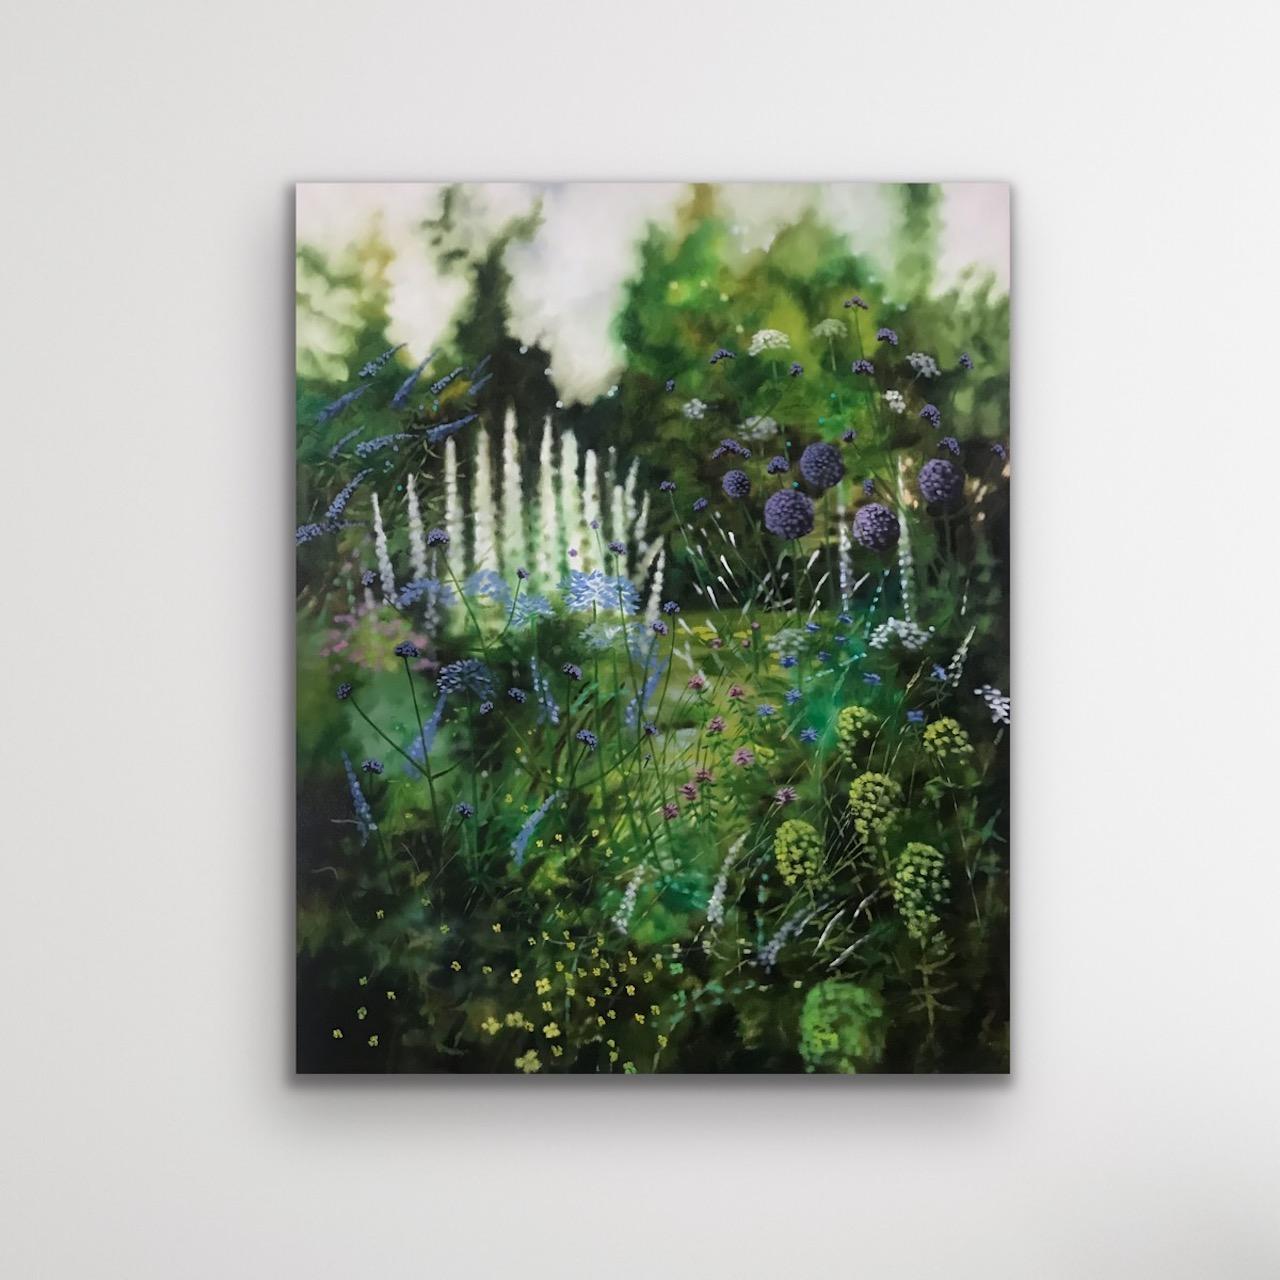 Dorset Sommergarten, Gartenkunst der Hortkultur, Original-realistisches Blumengemälde (Realismus), Painting, von Dylan Lloyd